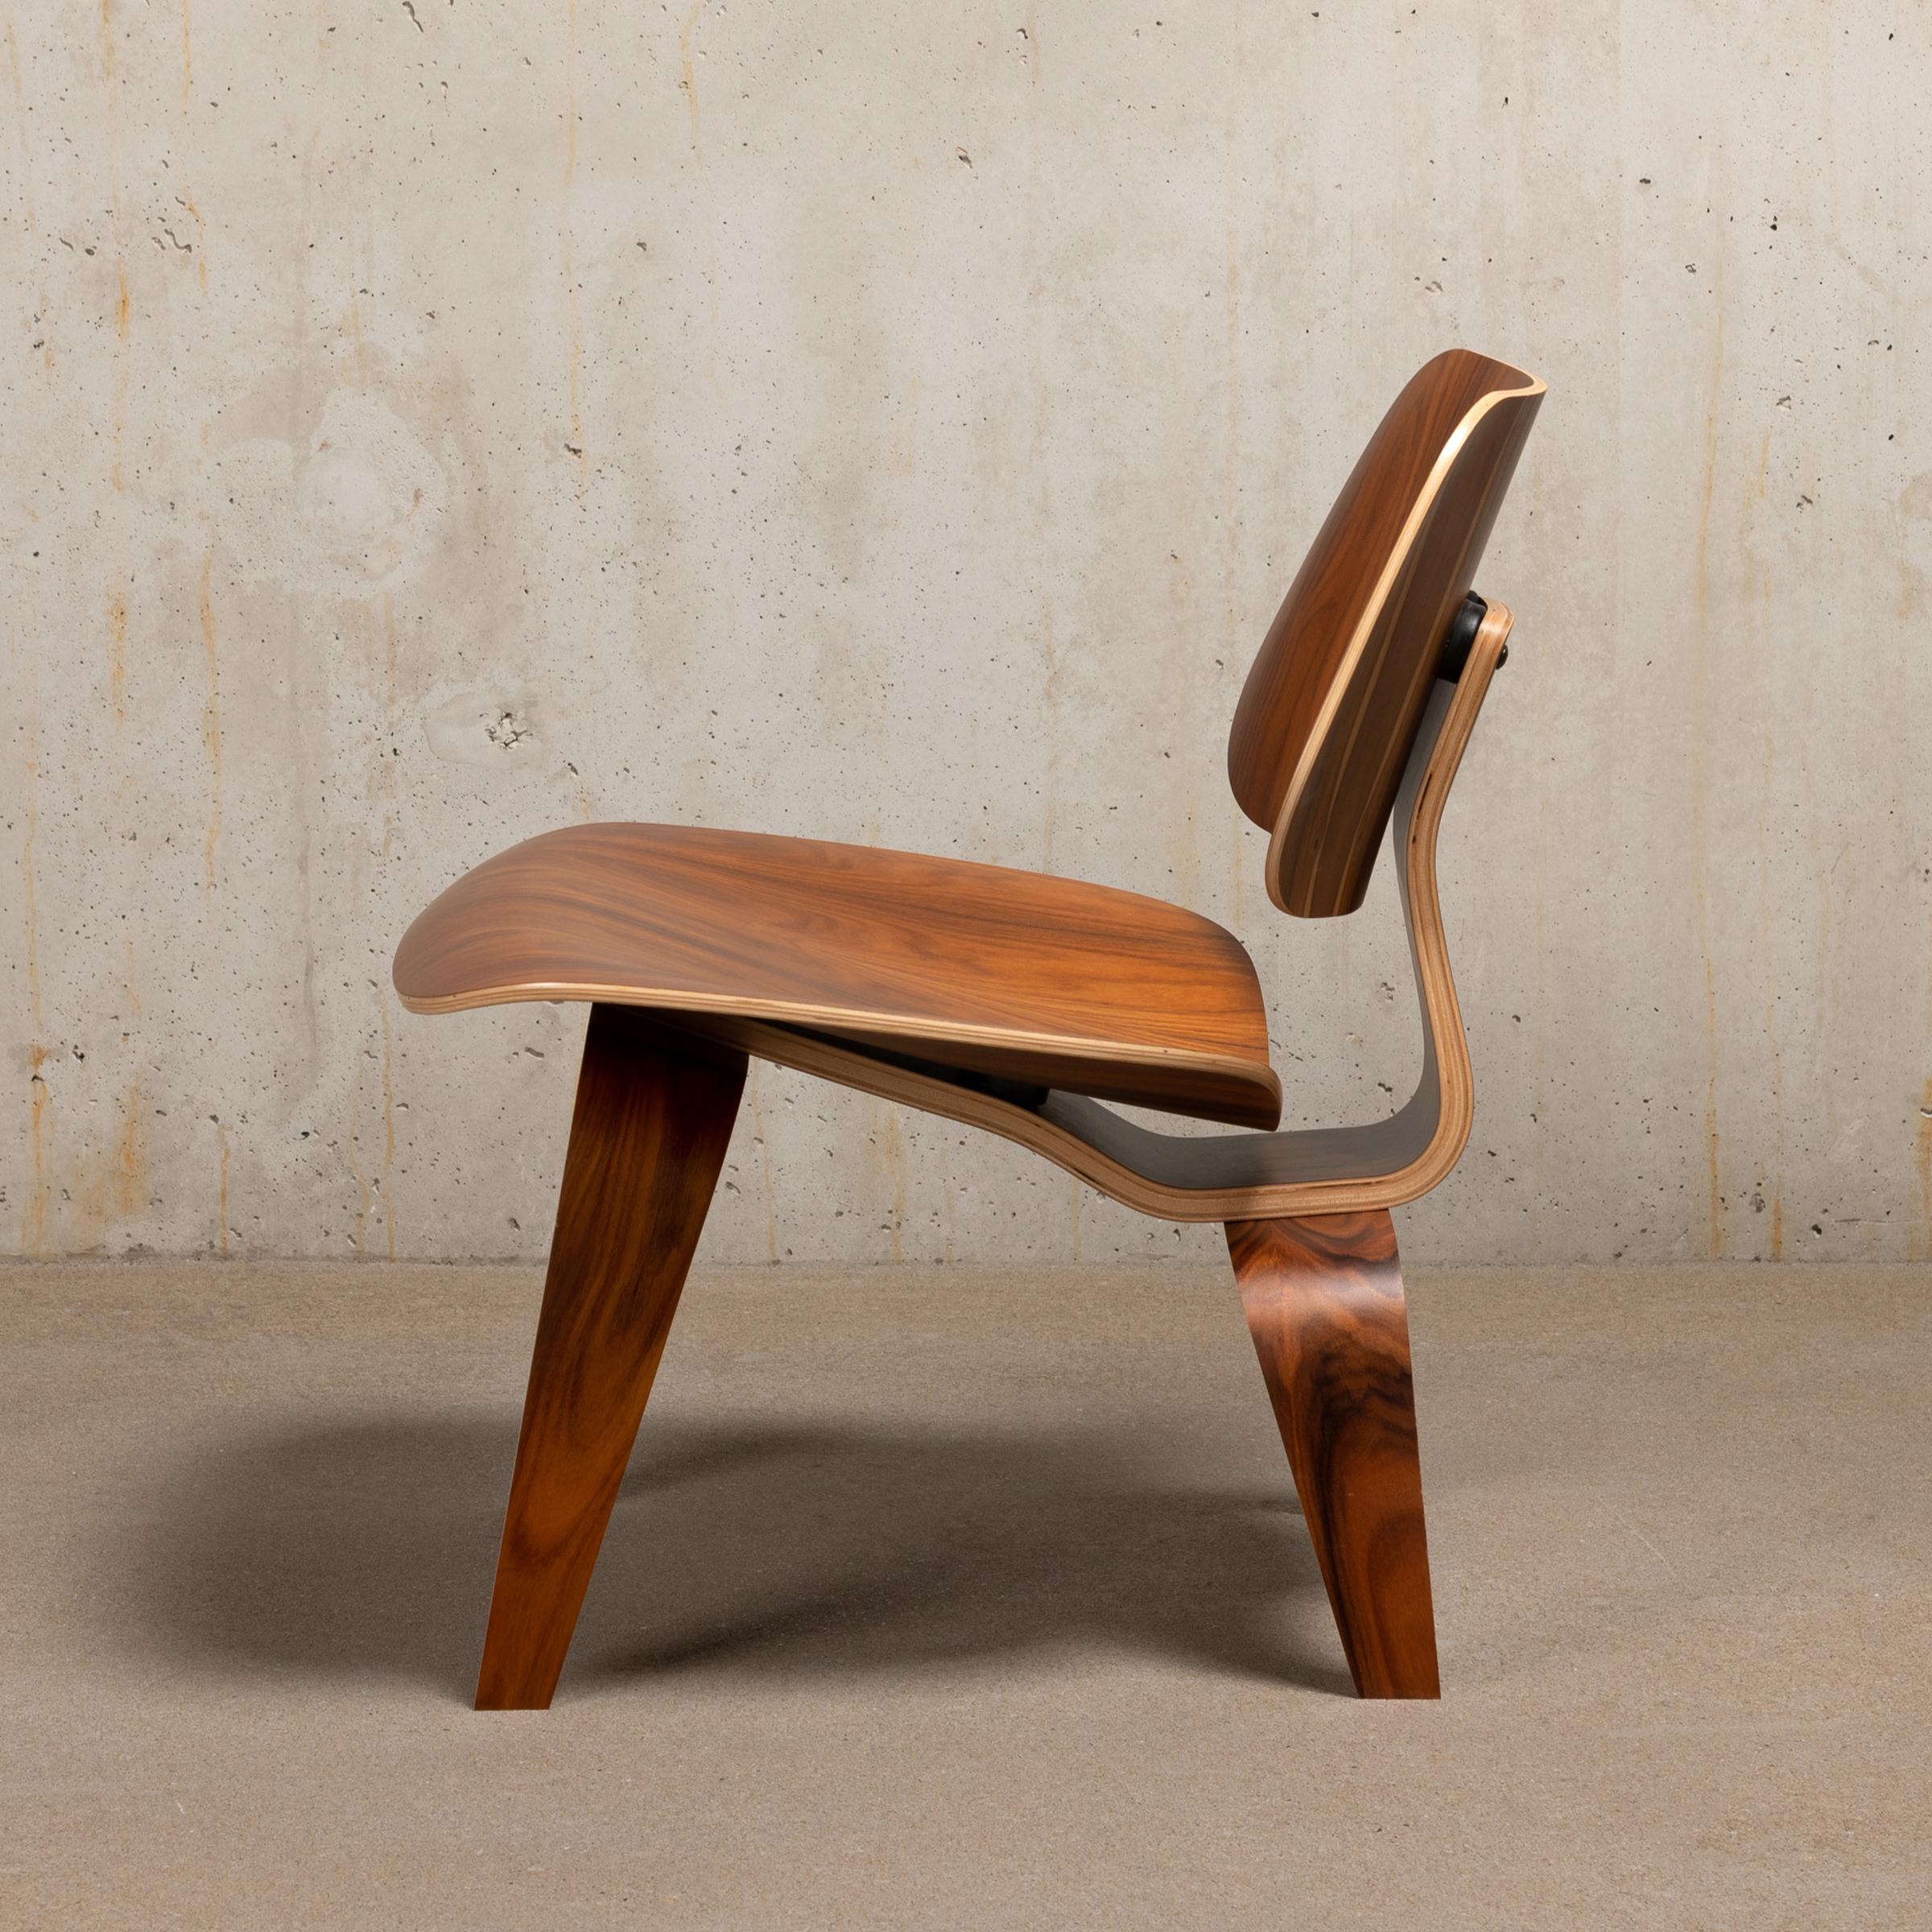 Ikonischer LCW-Sessel aus Santos-Palisander-Sperrholz. Das Furnier und der Stuhl sind in einem sehr guten / ausgezeichneten neuwertigen Zustand. Gekennzeichnet mit dem Label des Herstellers. Mehrere Stühle auf Lager, kontaktieren Sie uns für die